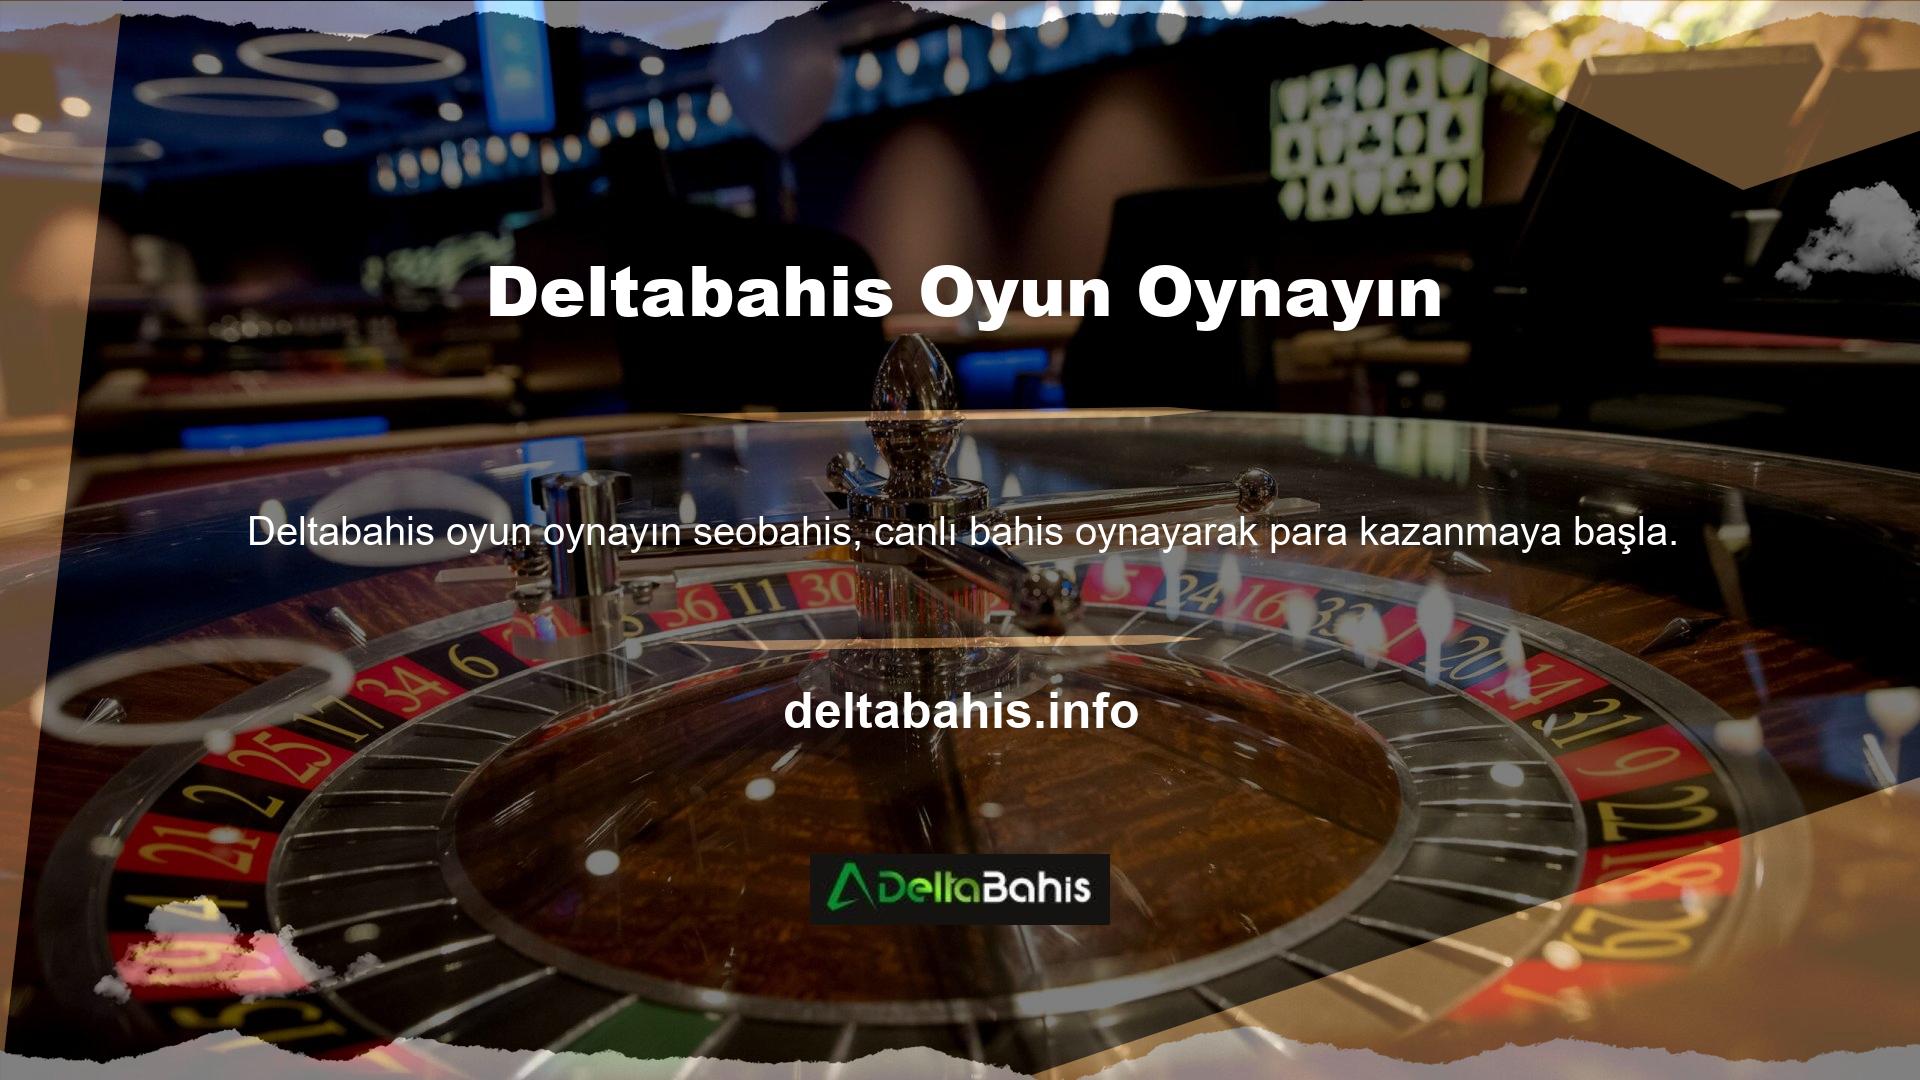 Deltabahis web sitesi, mobil versiyonu aracılığıyla etkin bir şekilde dağıtılır